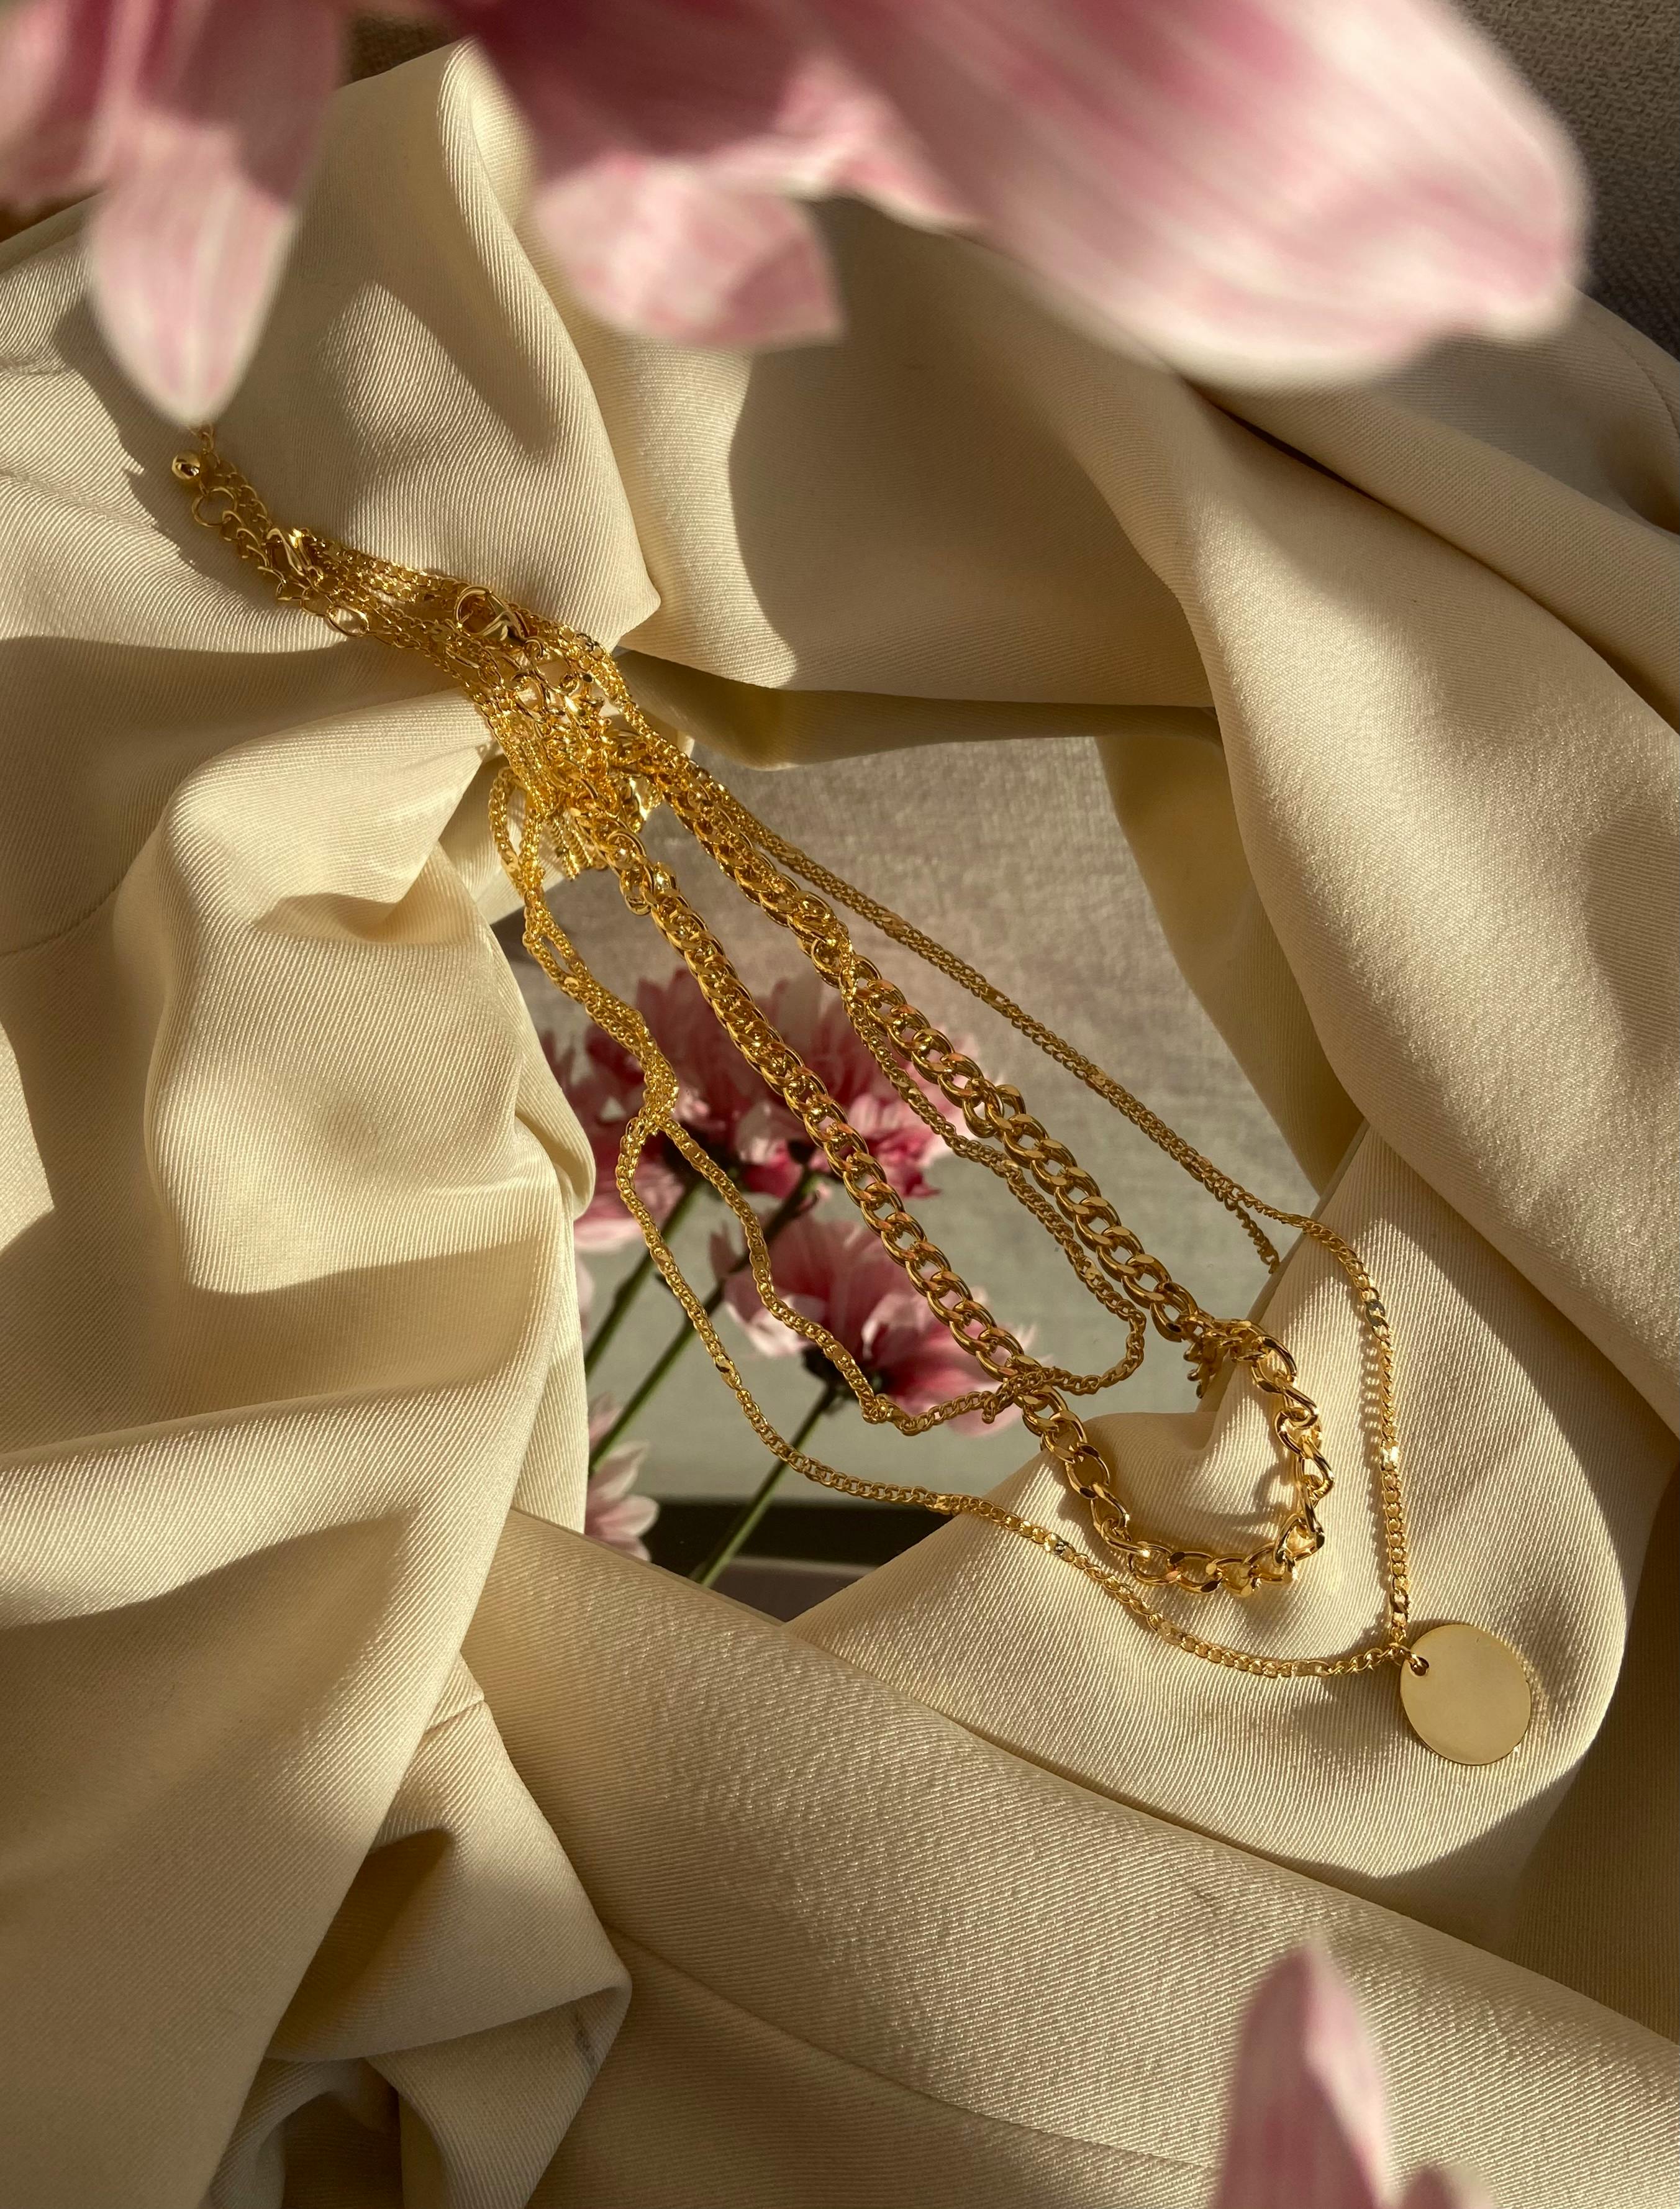 jewelry on elegant creased textile